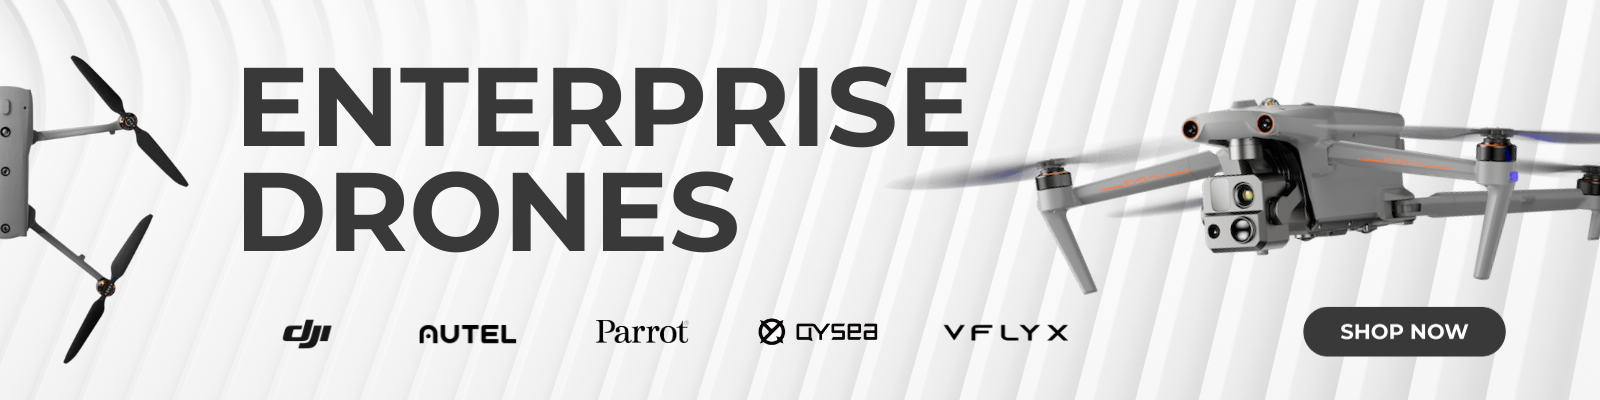 Enterprise drones, DJi, VFLYX, Qysea, Parrot, Autel